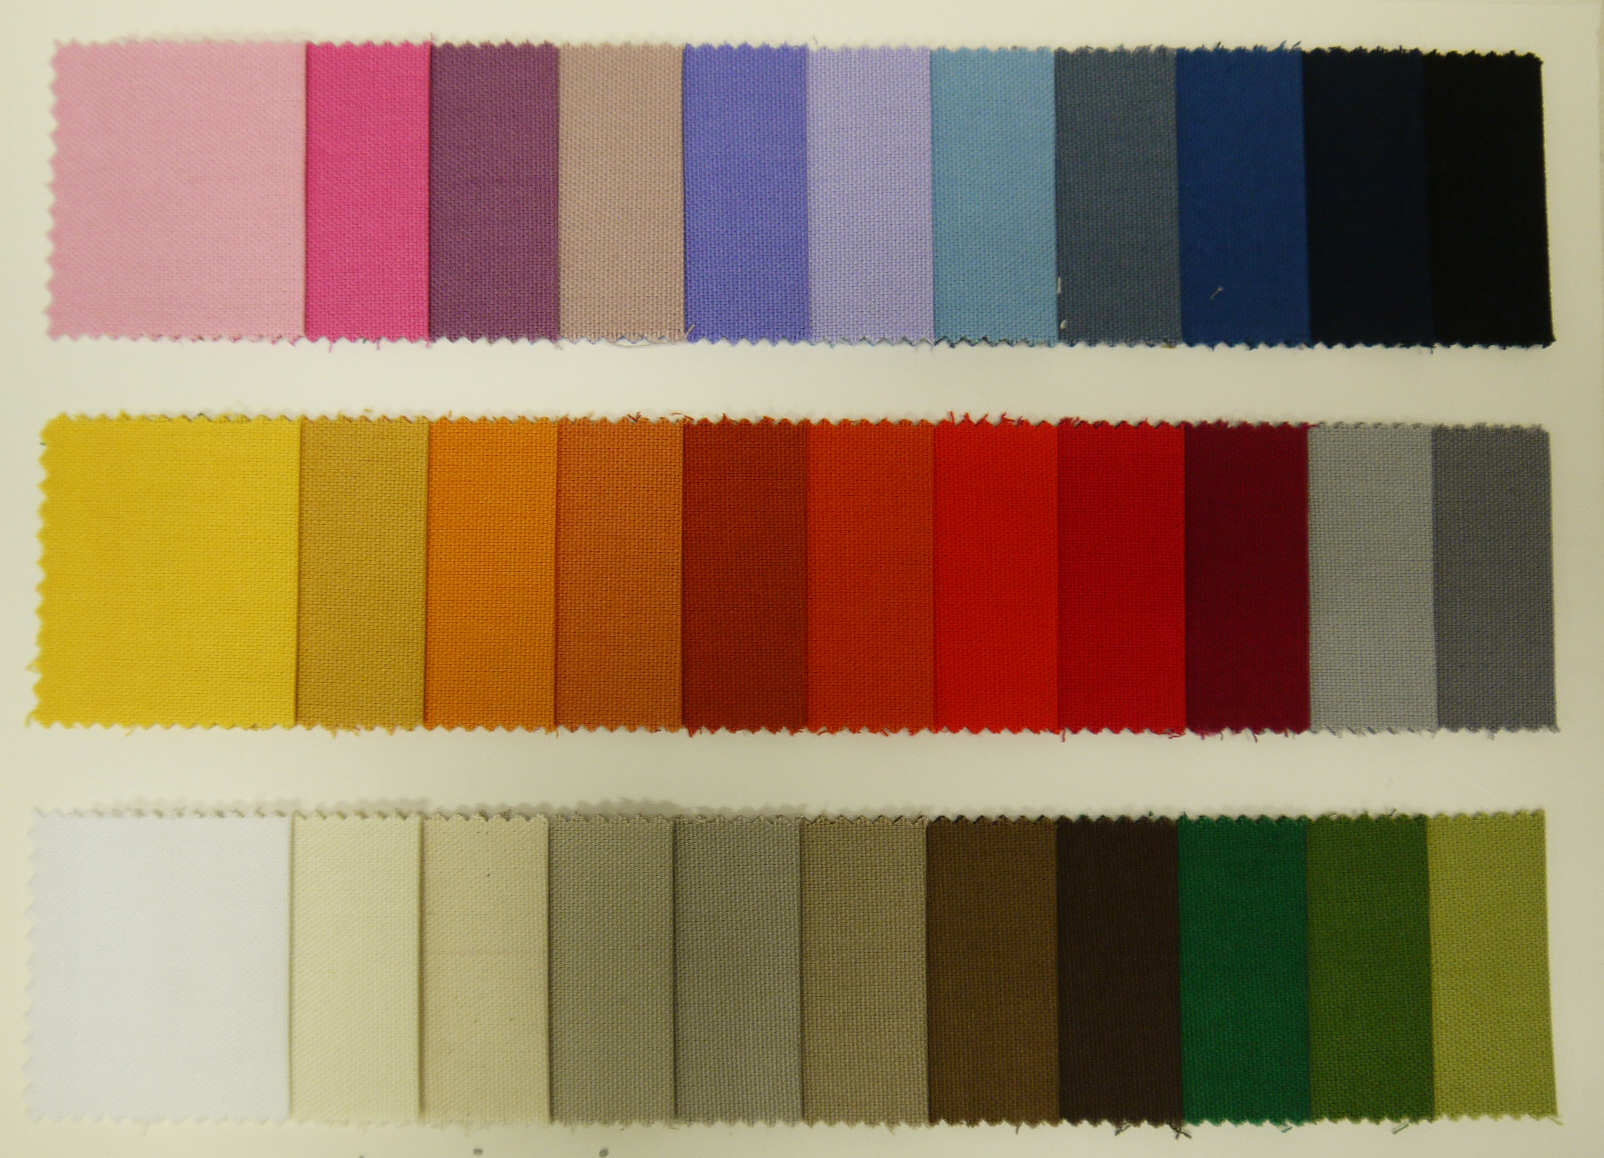 I colori per tessuto - Colorificio Grossich